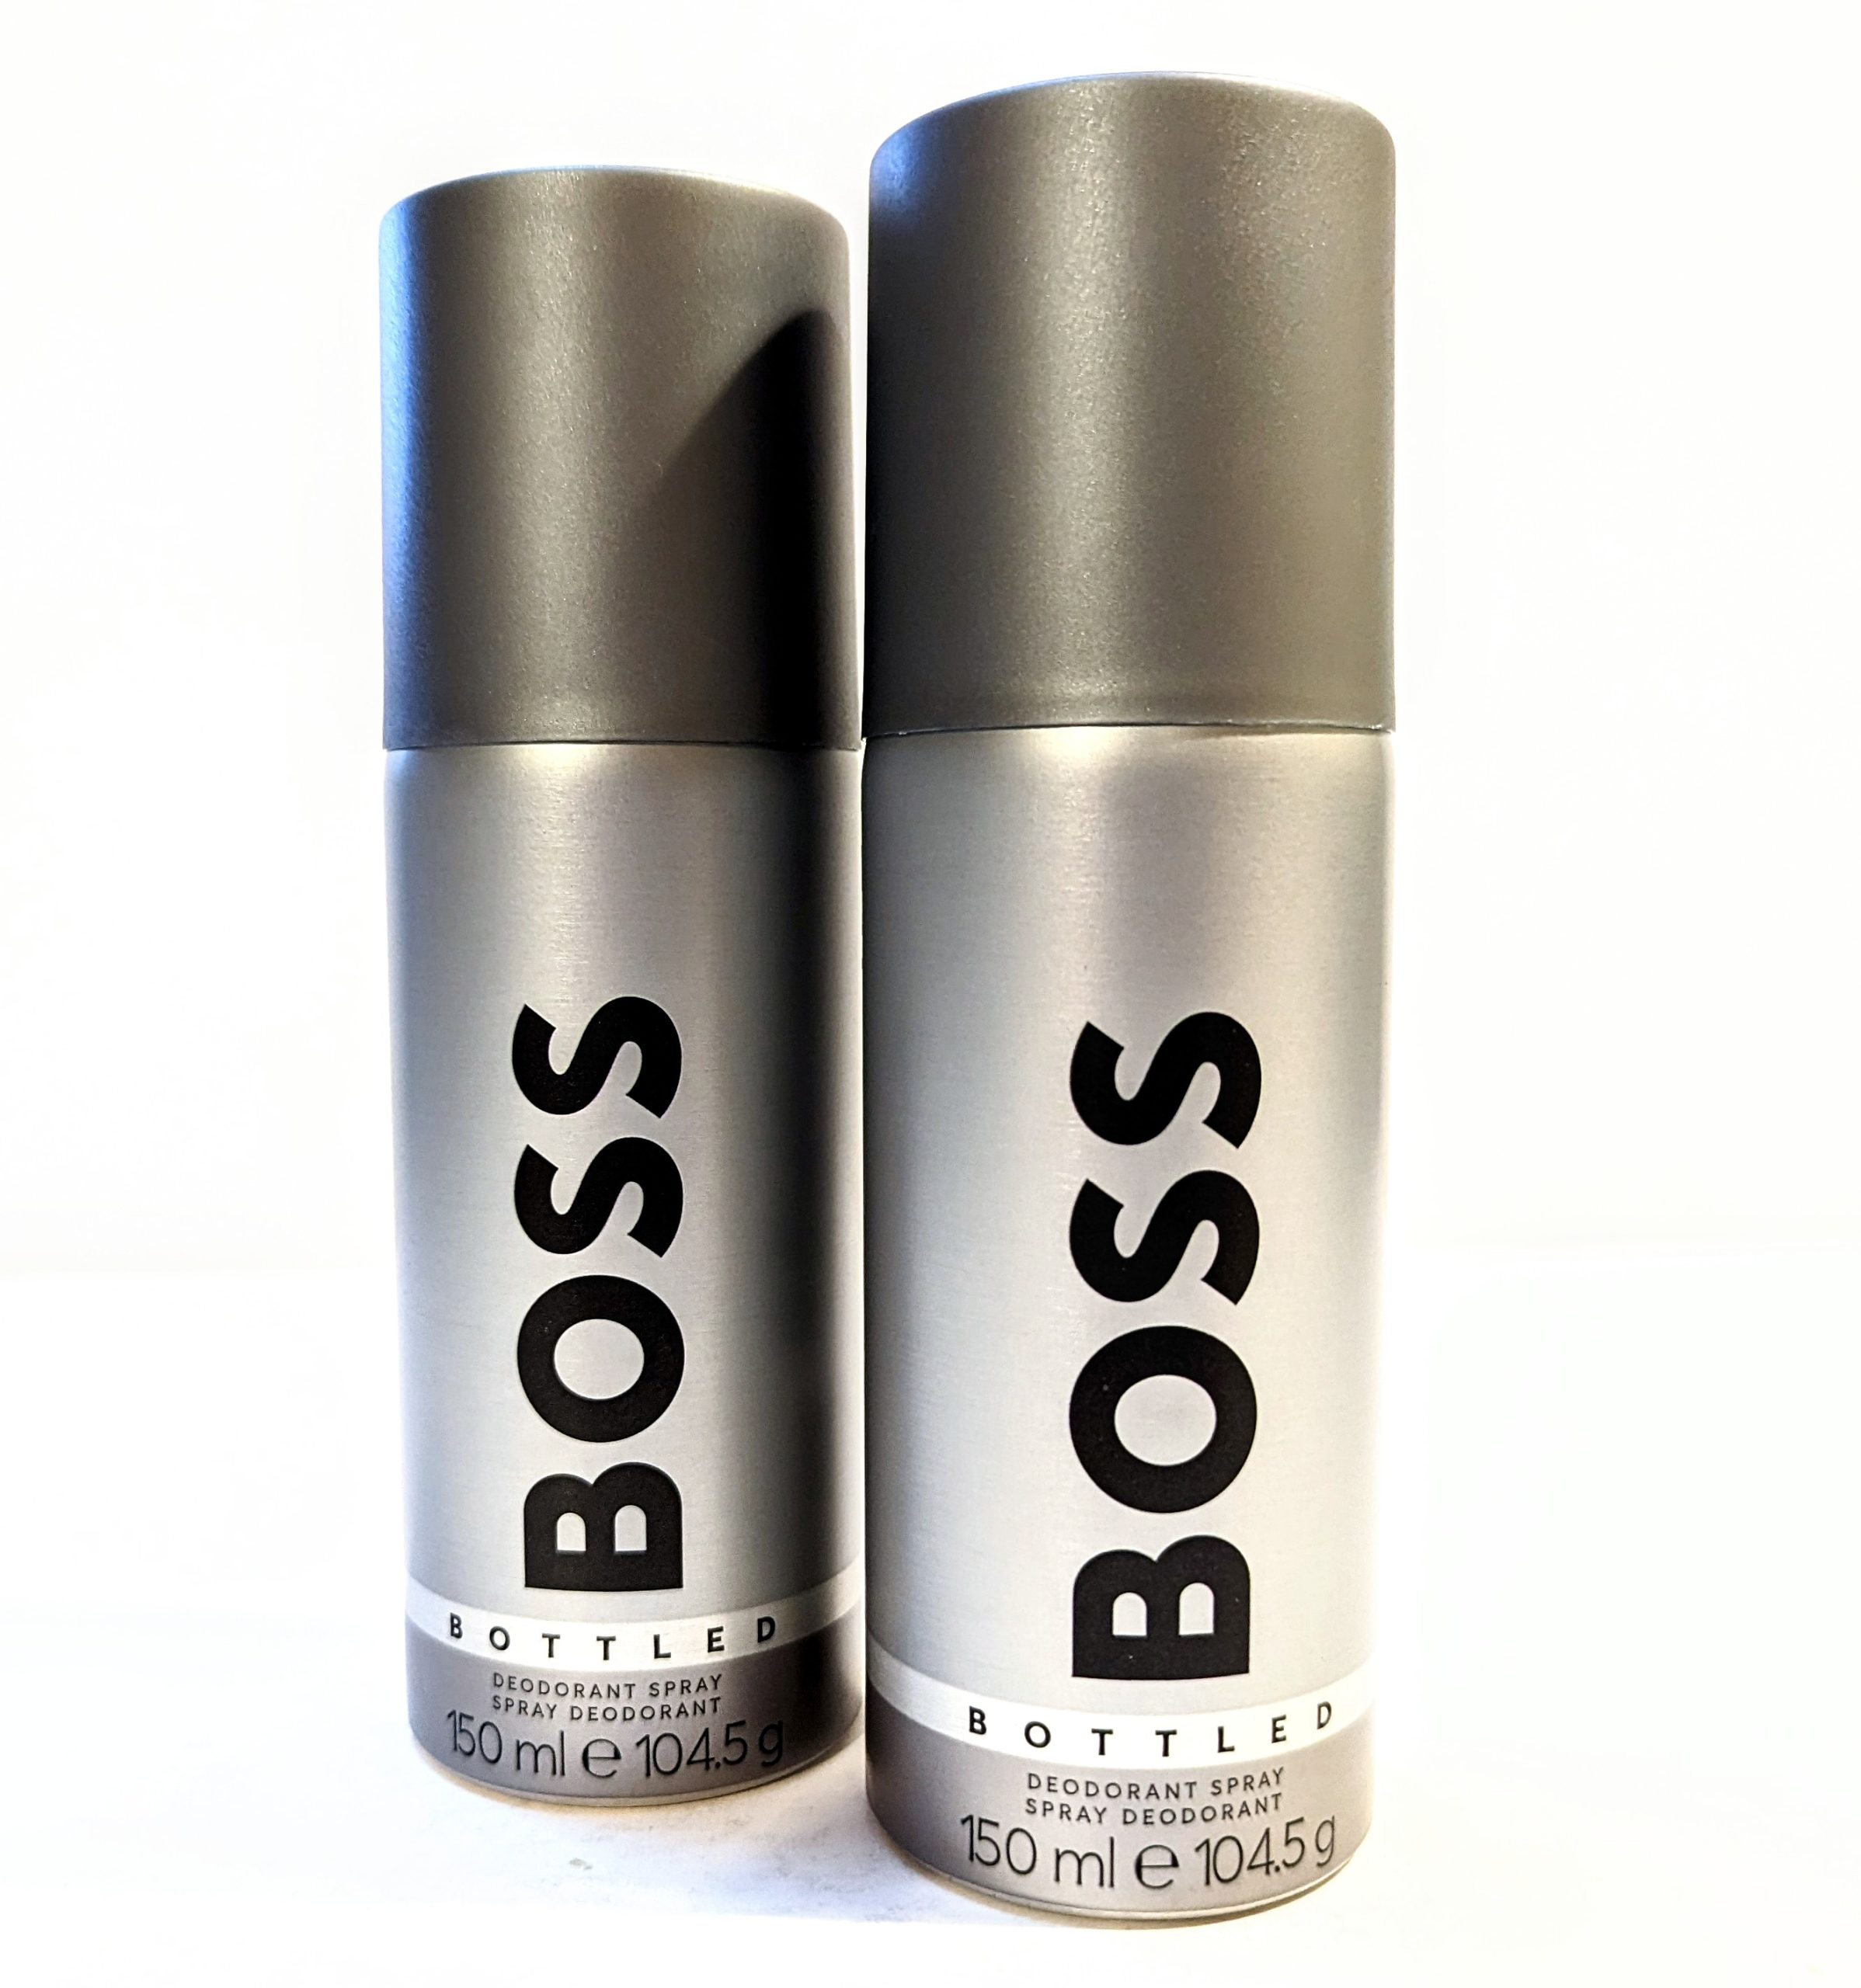 Three bottles of Hugo Boss Bottled 150ml Deodorant Body Spray for Men on a white background.